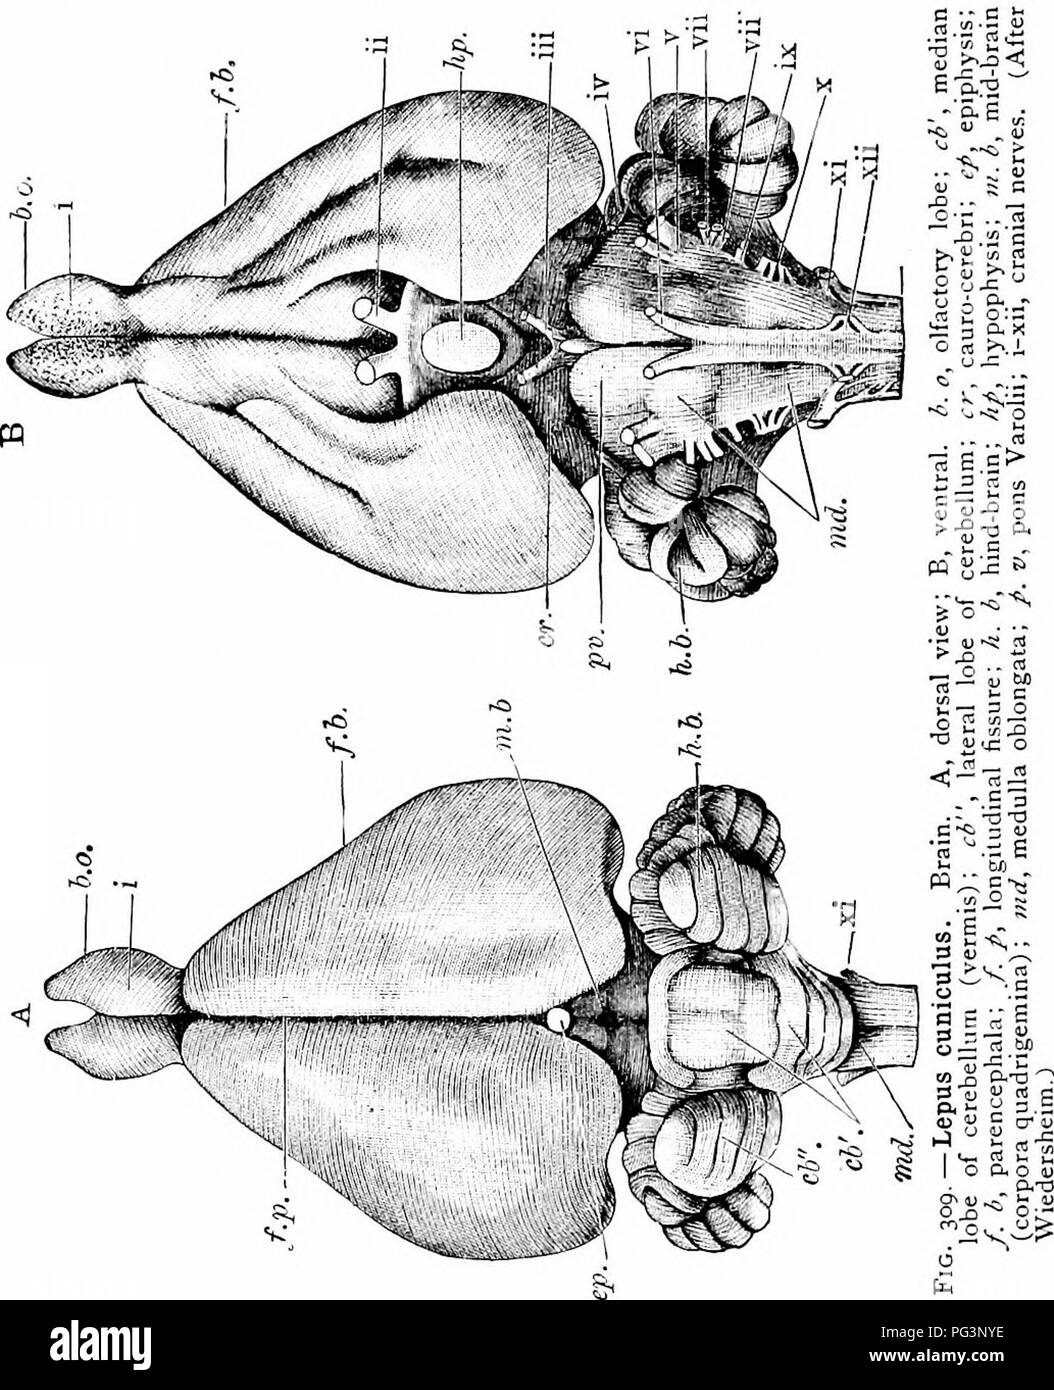 . Un manuale di zoologia. 5'4 MANUALE DI ZOOLOGIA setta. La cavità neurale, come in il piccione, contiene gli organi centrali del cerebro-spinale sistema nervoso, il cervello e il midollo spinale. Il cervello (Fig. 309) del coniglio contiene. Le stesse parti principali come quella del piccione, con alcune differenze, di cui i seguenti sono i più importanti. La superficie degli emisferi cerebrali (Fig. 309, /. b. Si prega di notare che queste immagini vengono estratte dalla pagina sottoposta a scansione di immagini che possono essere state migliorate digitalmente per la leggibilità - Colorazione e aspetto di queste illustrazioni potrebbero non perfettamente res Foto Stock